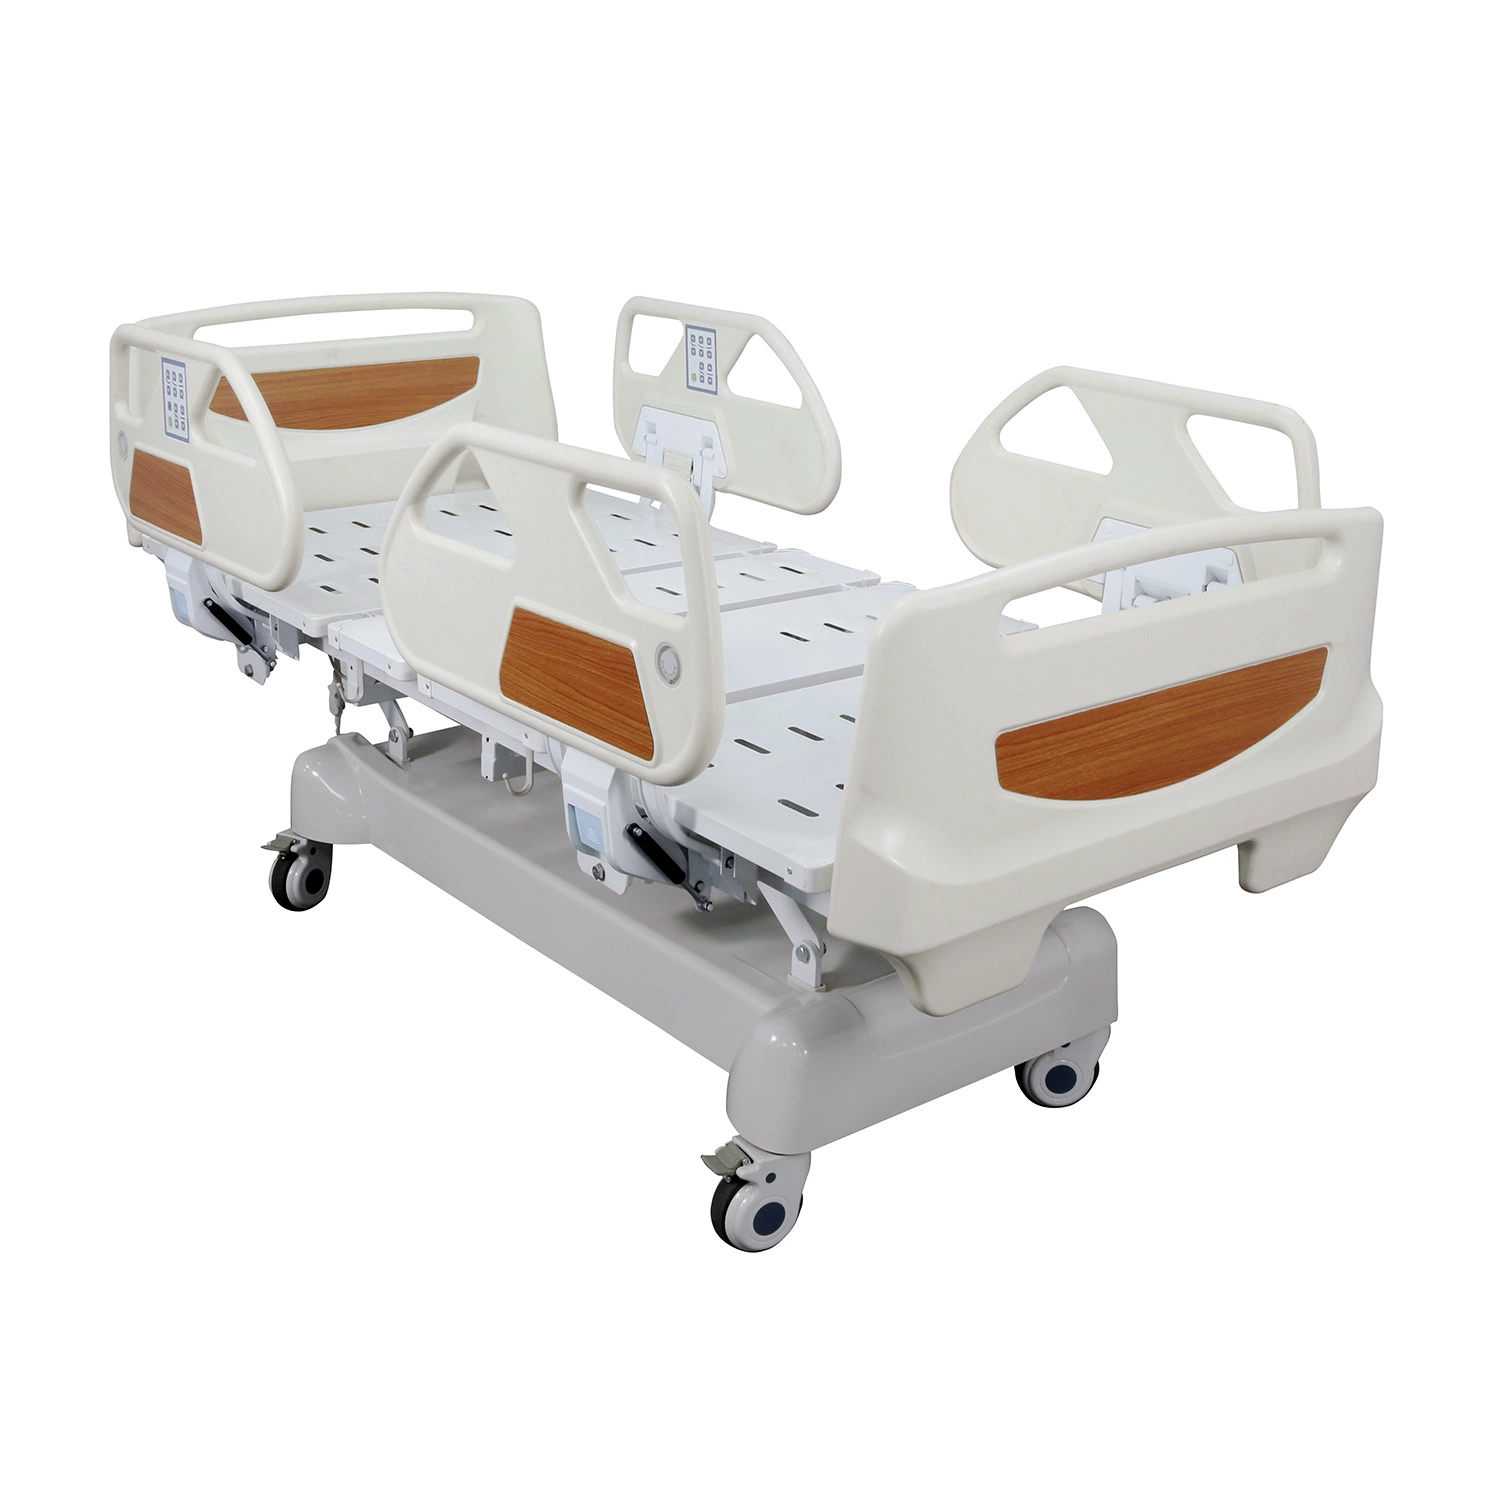 Mobiliário comercial ICU Hospital Bed fabricante Equipamento médico